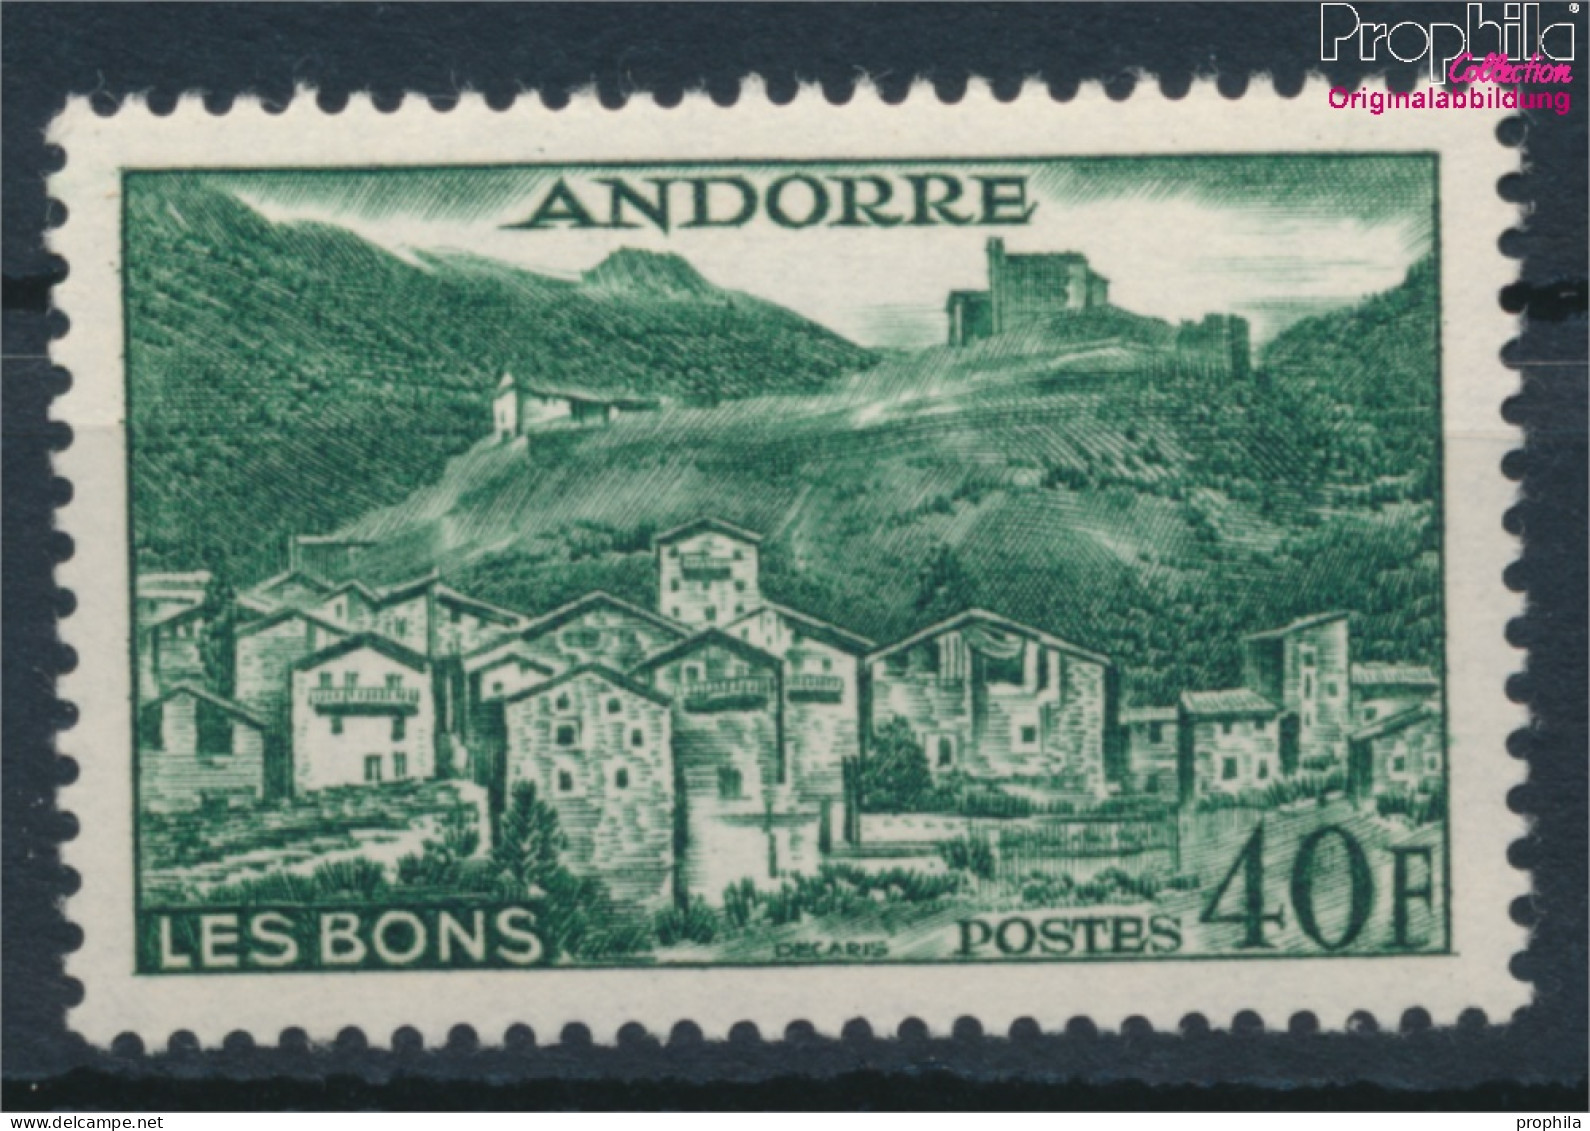 Andorra - Französische Post 155 Postfrisch 1955 Landschaften (10368396 - Nuovi